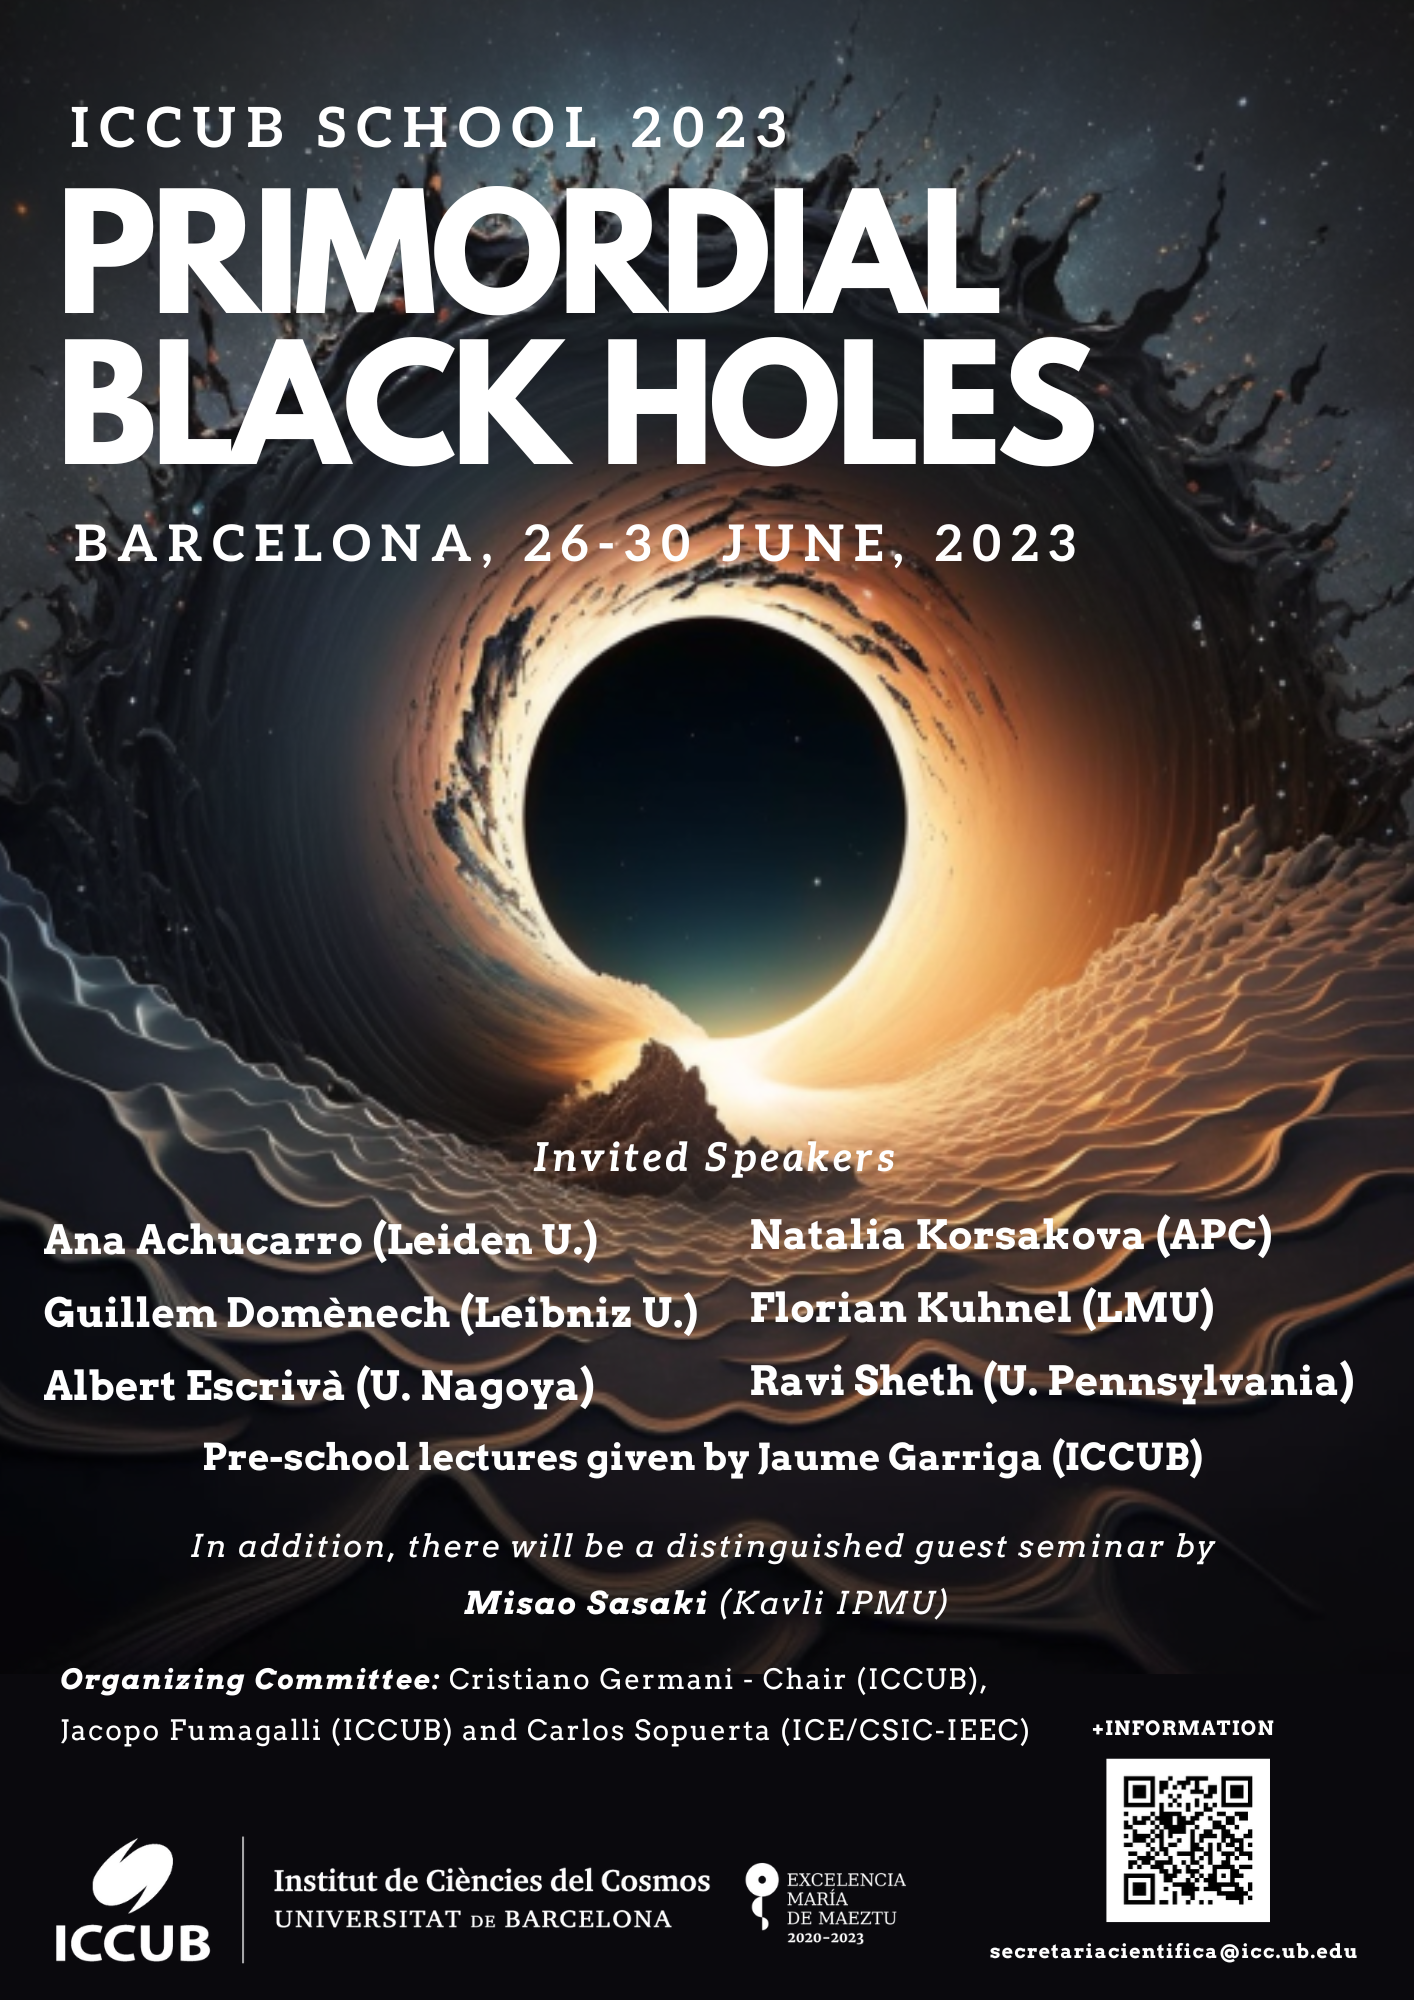 ICCUB School 2023: Primordial Black Holes